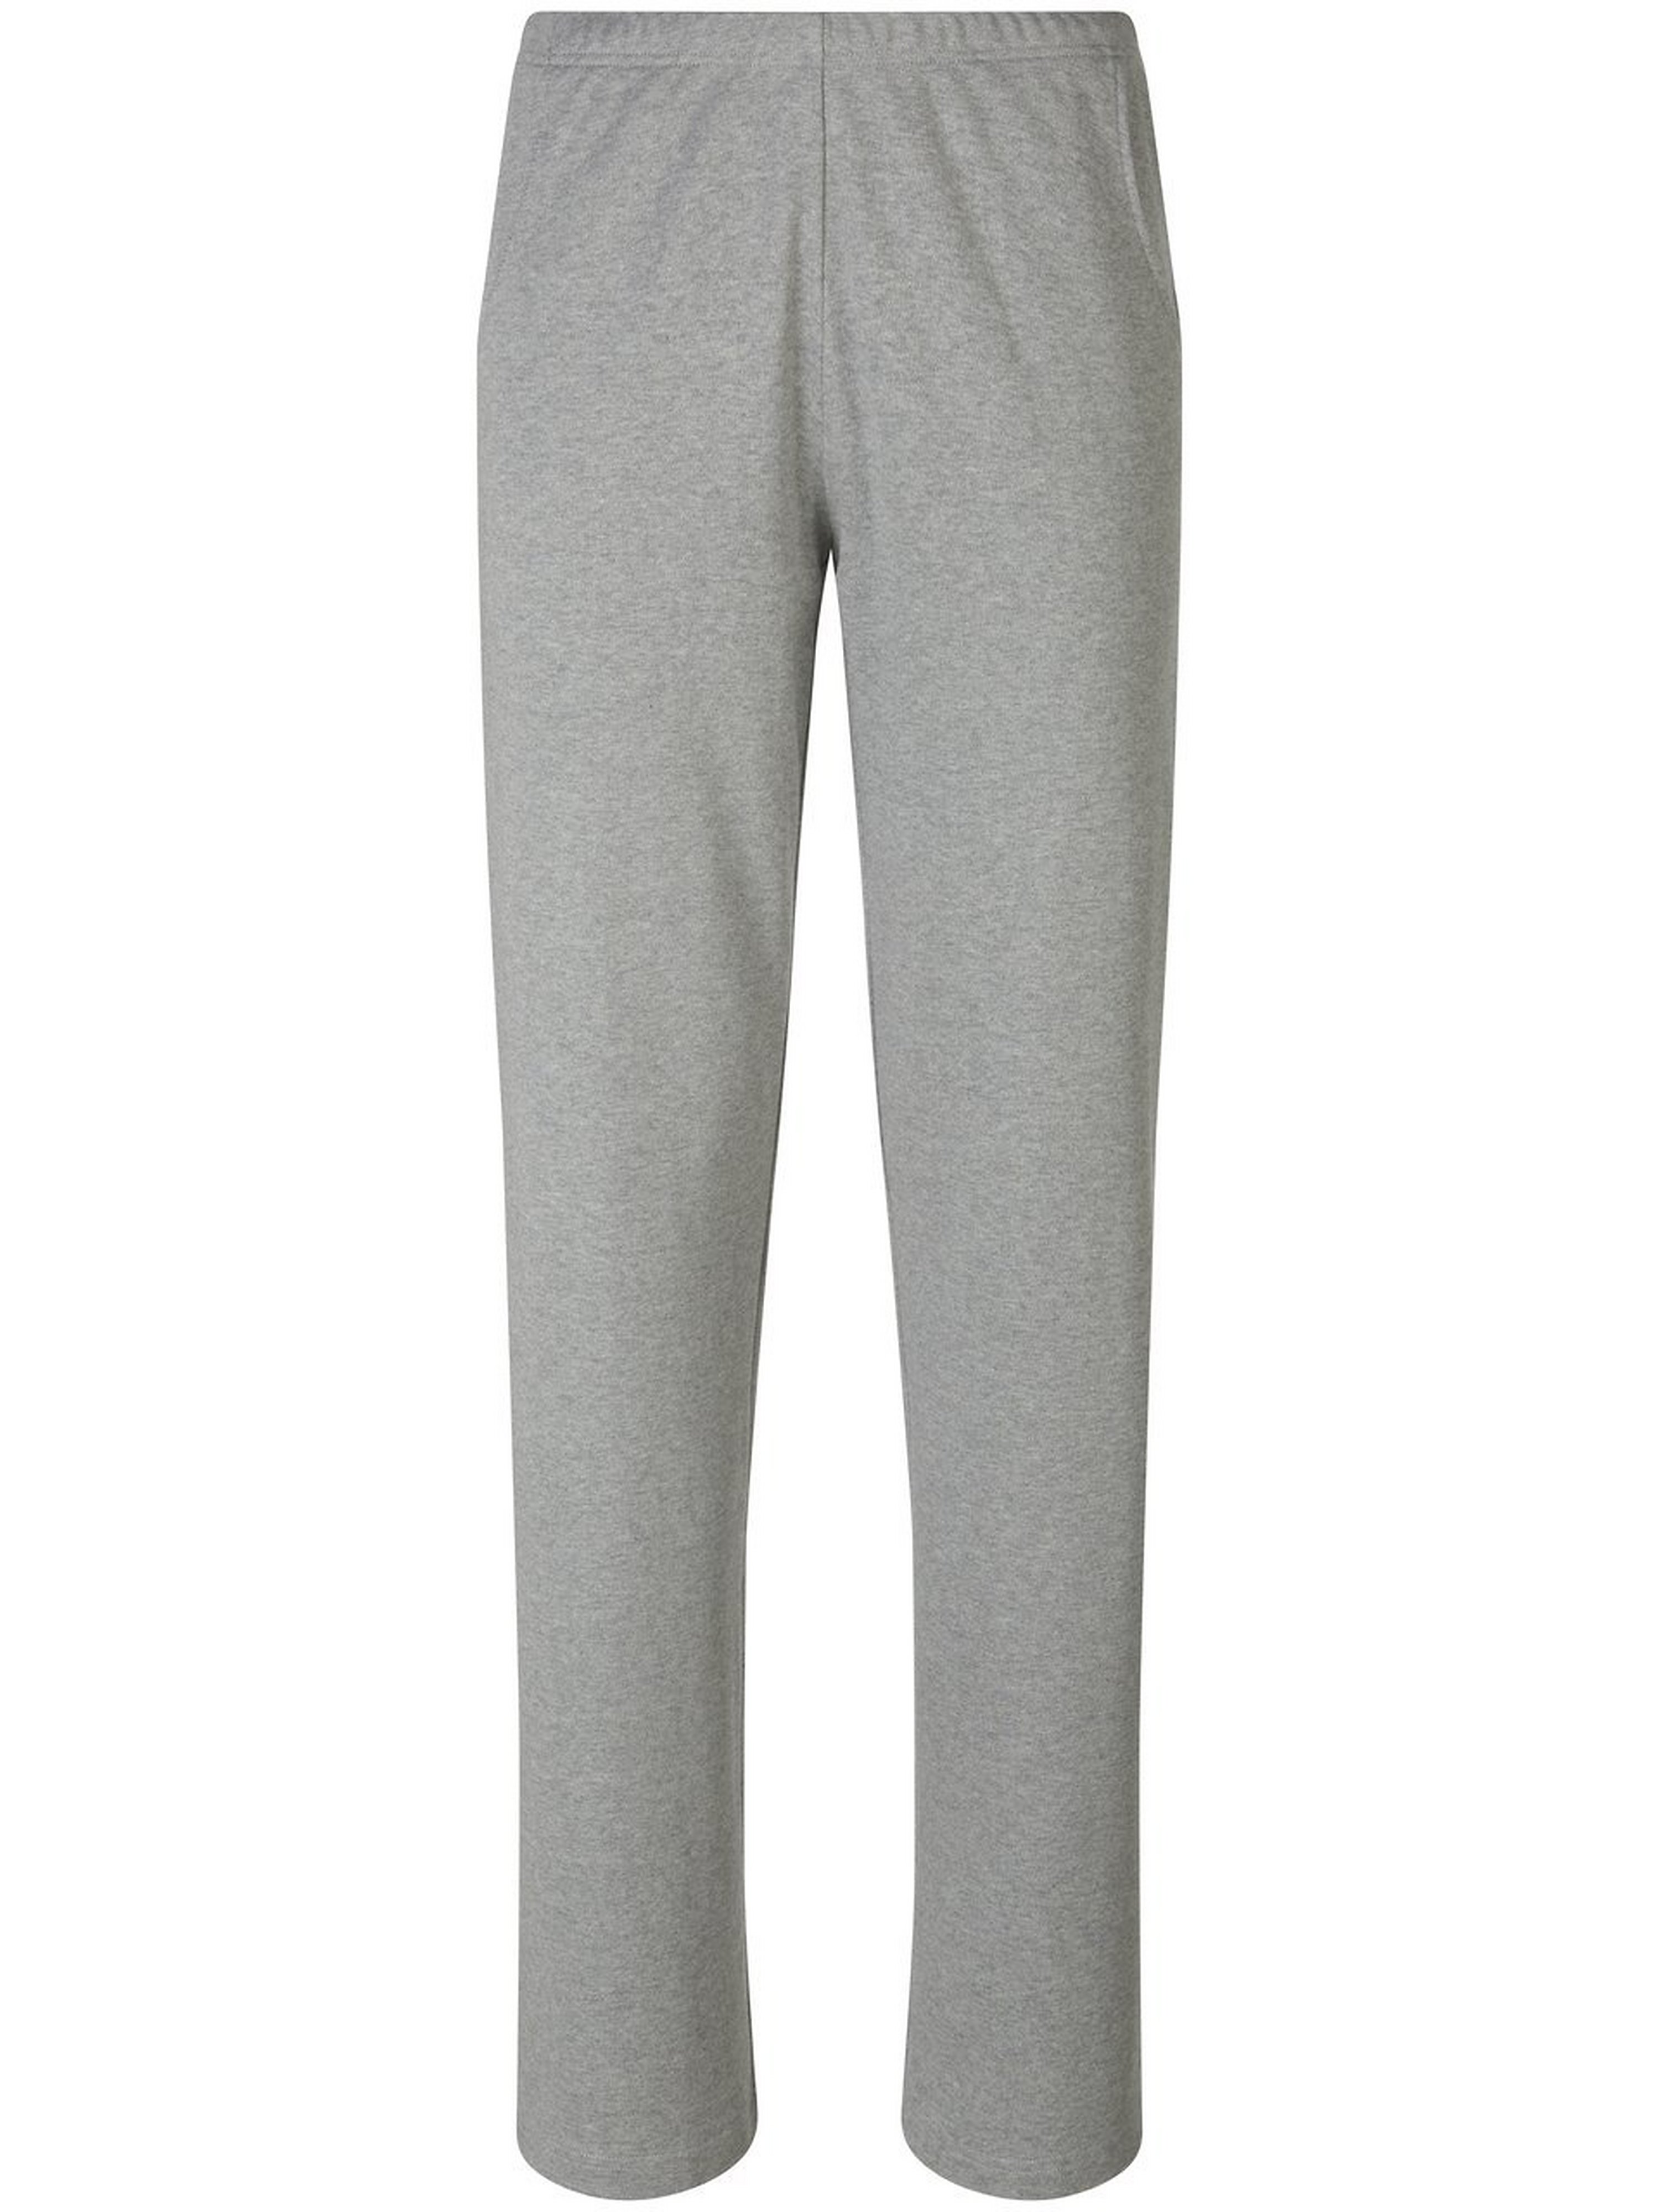 Le pantalon loisirs 100% coton bio  Peter Hahn gris